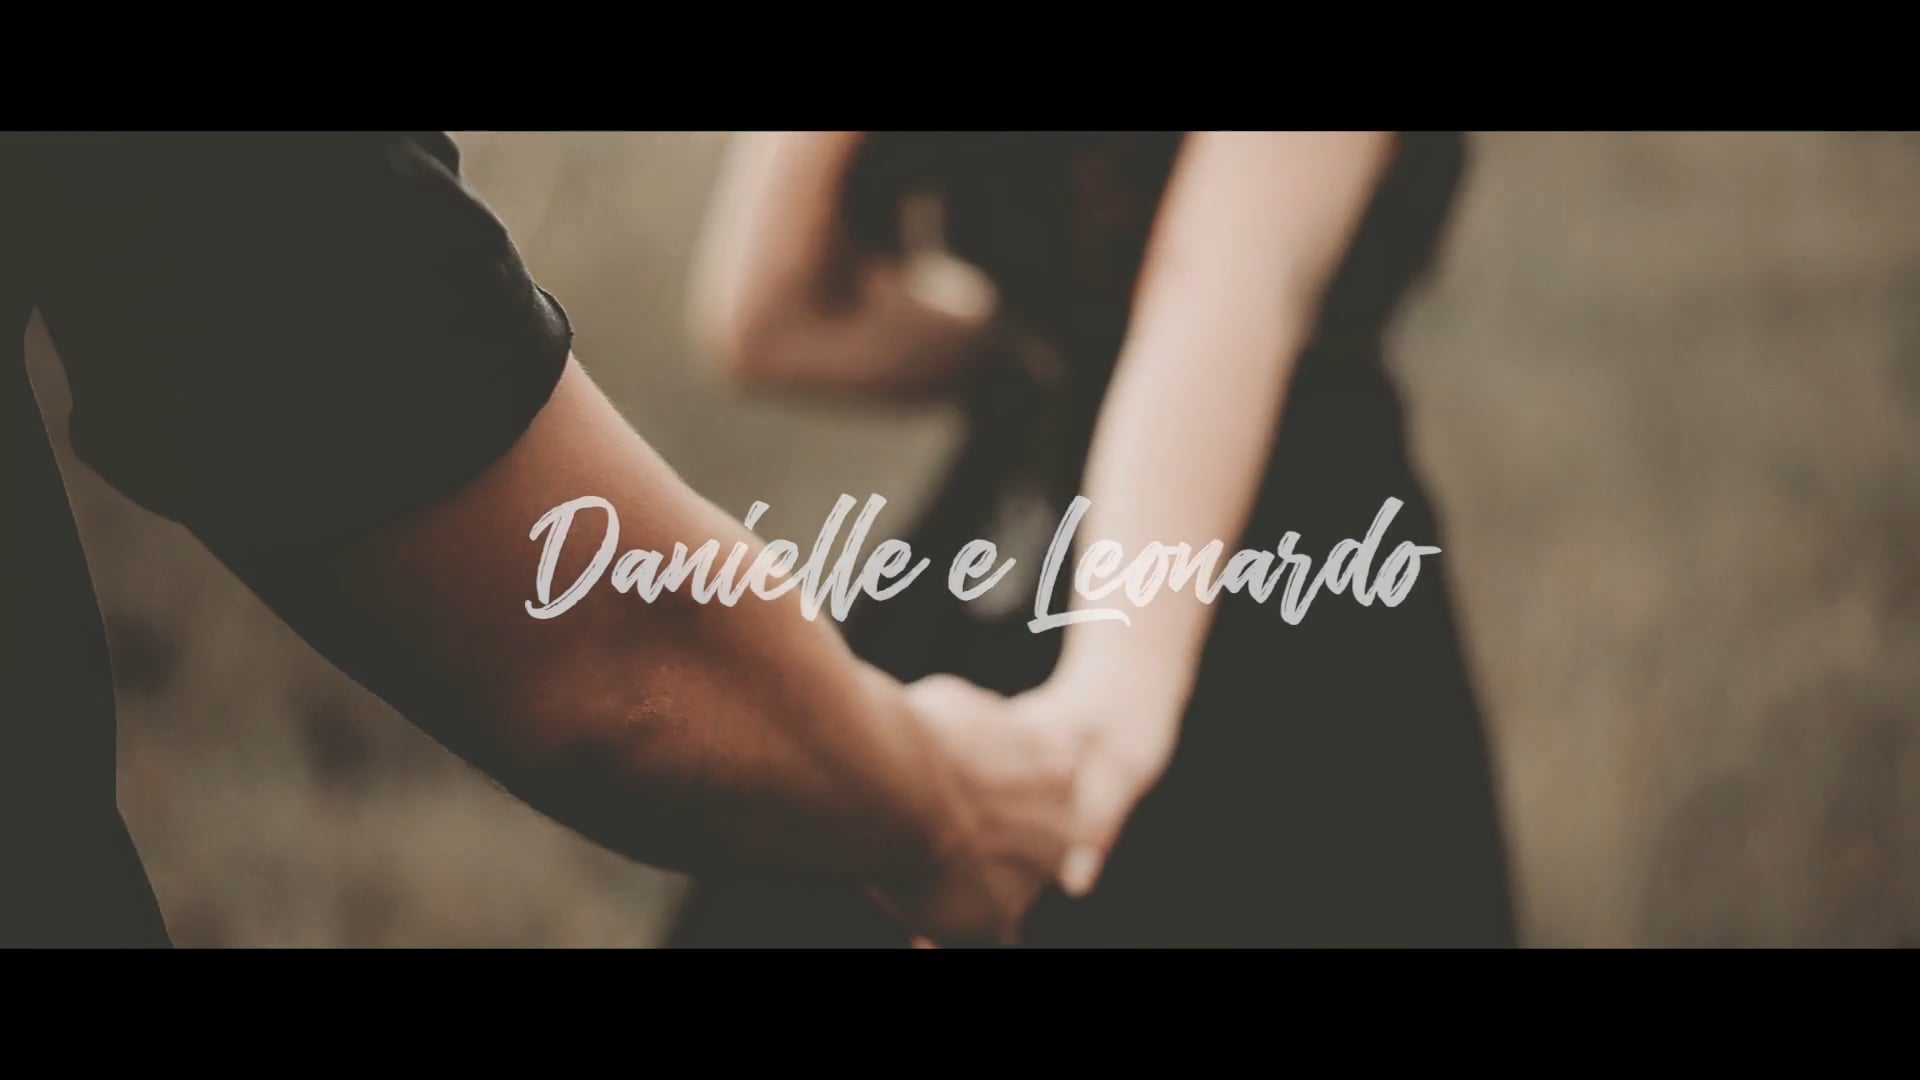 Ensaio Danielle e Leonardo